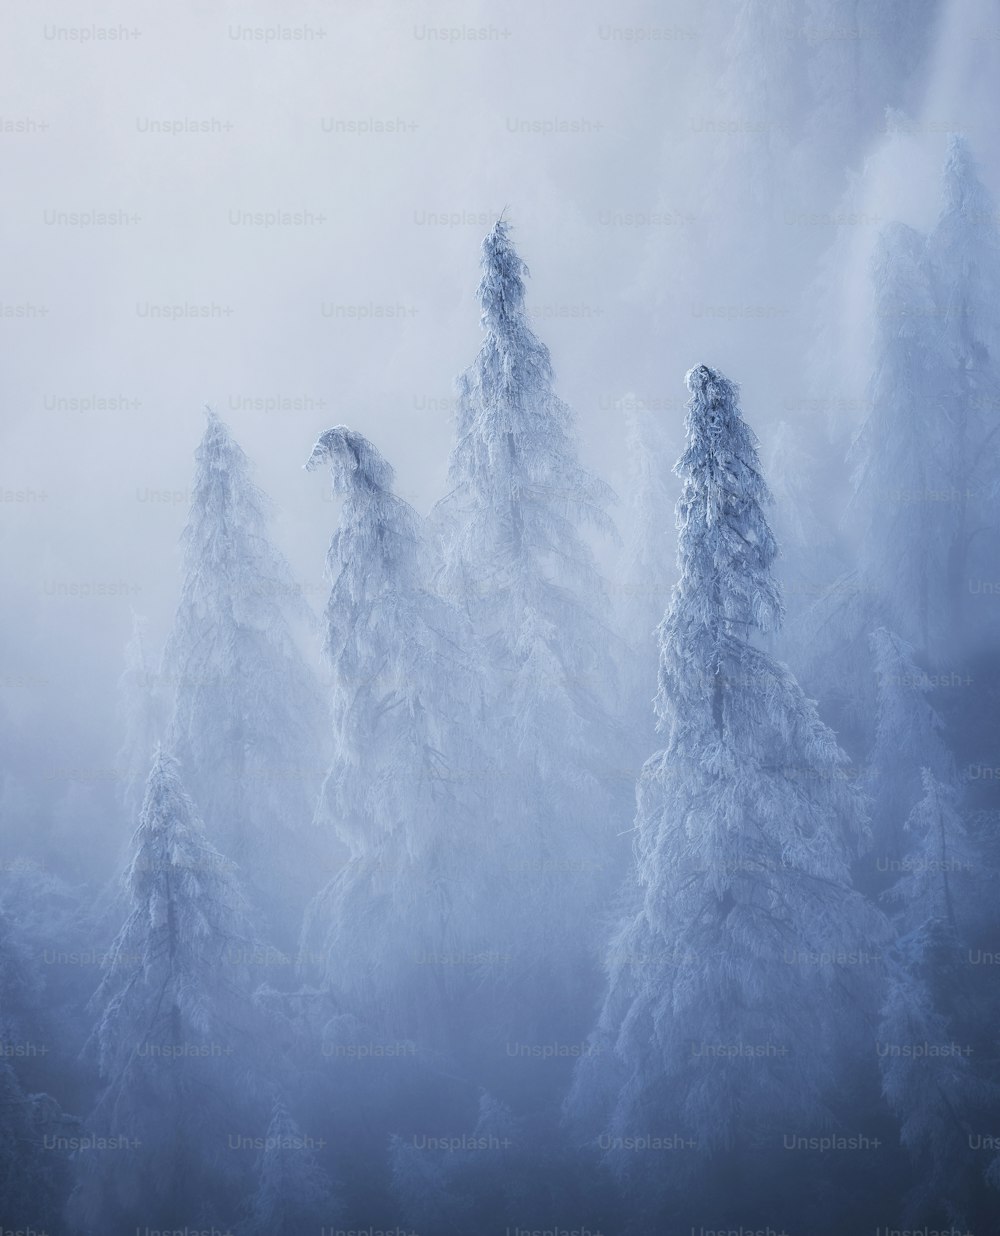 Un groupe d’arbres enneigés dans une forêt brumeuse